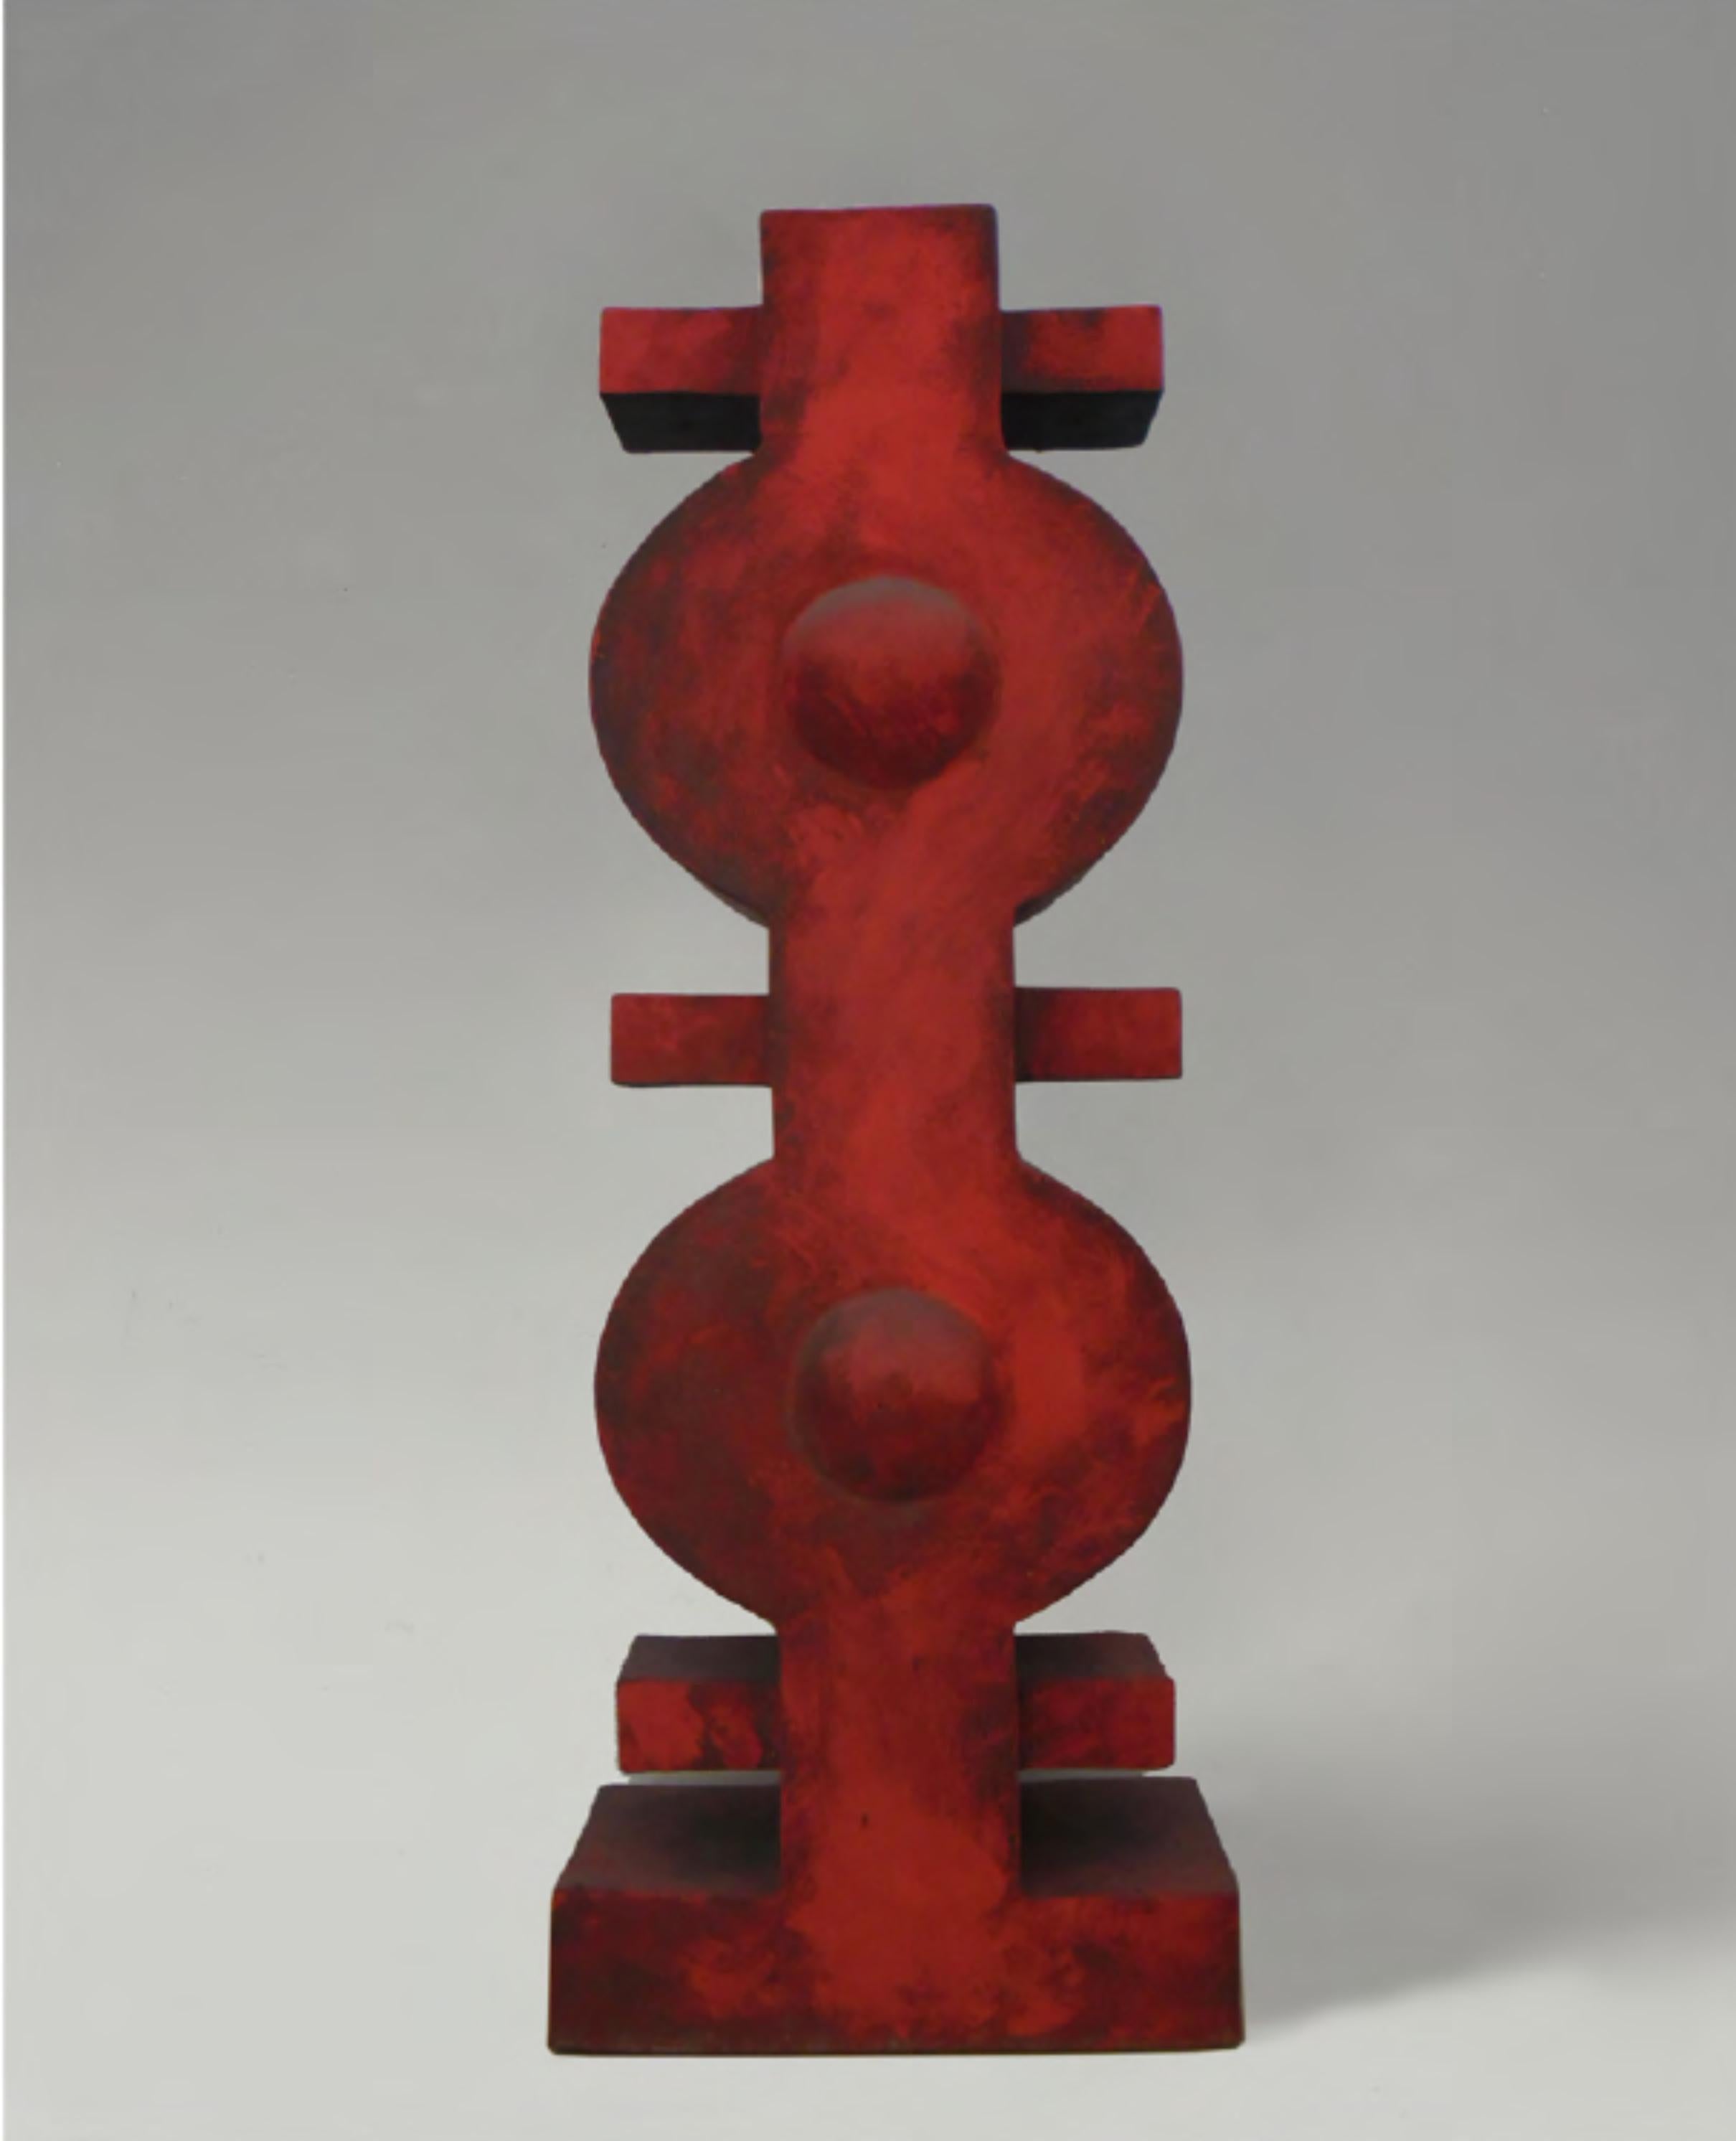 CF Te1.12 Terre von Caturegli Formica
Abmessungen: B 45 x H 64 cm
MATERIALIEN: Keramik

Terres, Dakar, Senegal, 1987-1991 

TERRES ist eine Serie von symbolischen Keramikskulpturen, die in Dakar, Senegal, im Atelier 